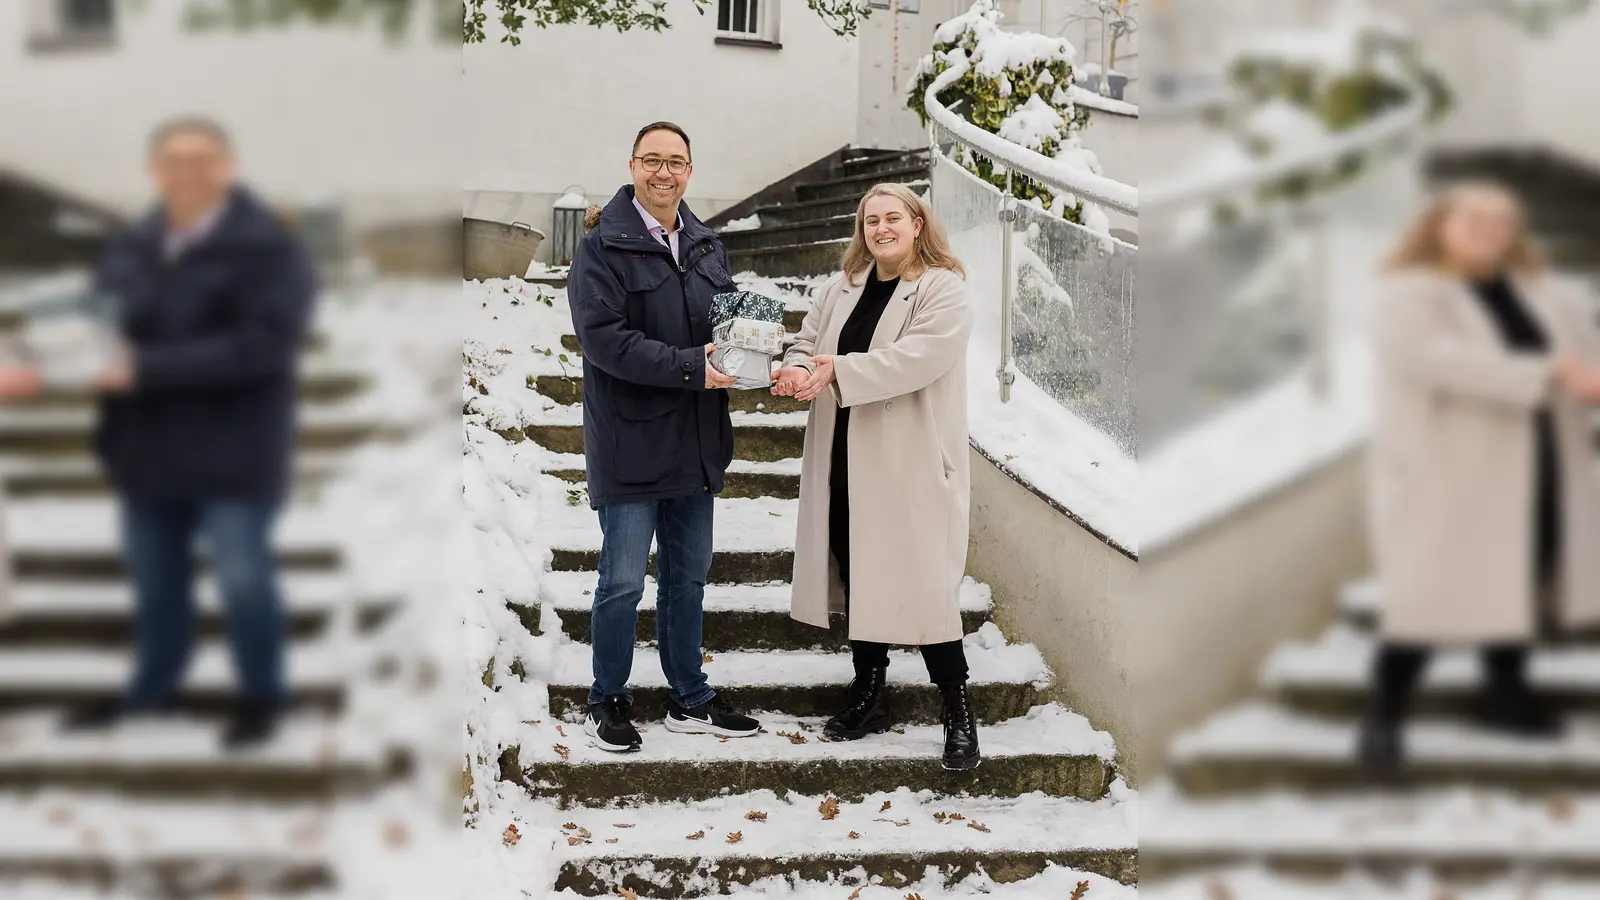 Ulf Tausche, Vorsitzender des Montessori Vereins Dachau, übergab die Weihnachtsgeschenke im Hof des Kinderhauses an Laura Kaufmann, Leiterin des AWO-Frauenhauses in Dachau. (Foto: red)